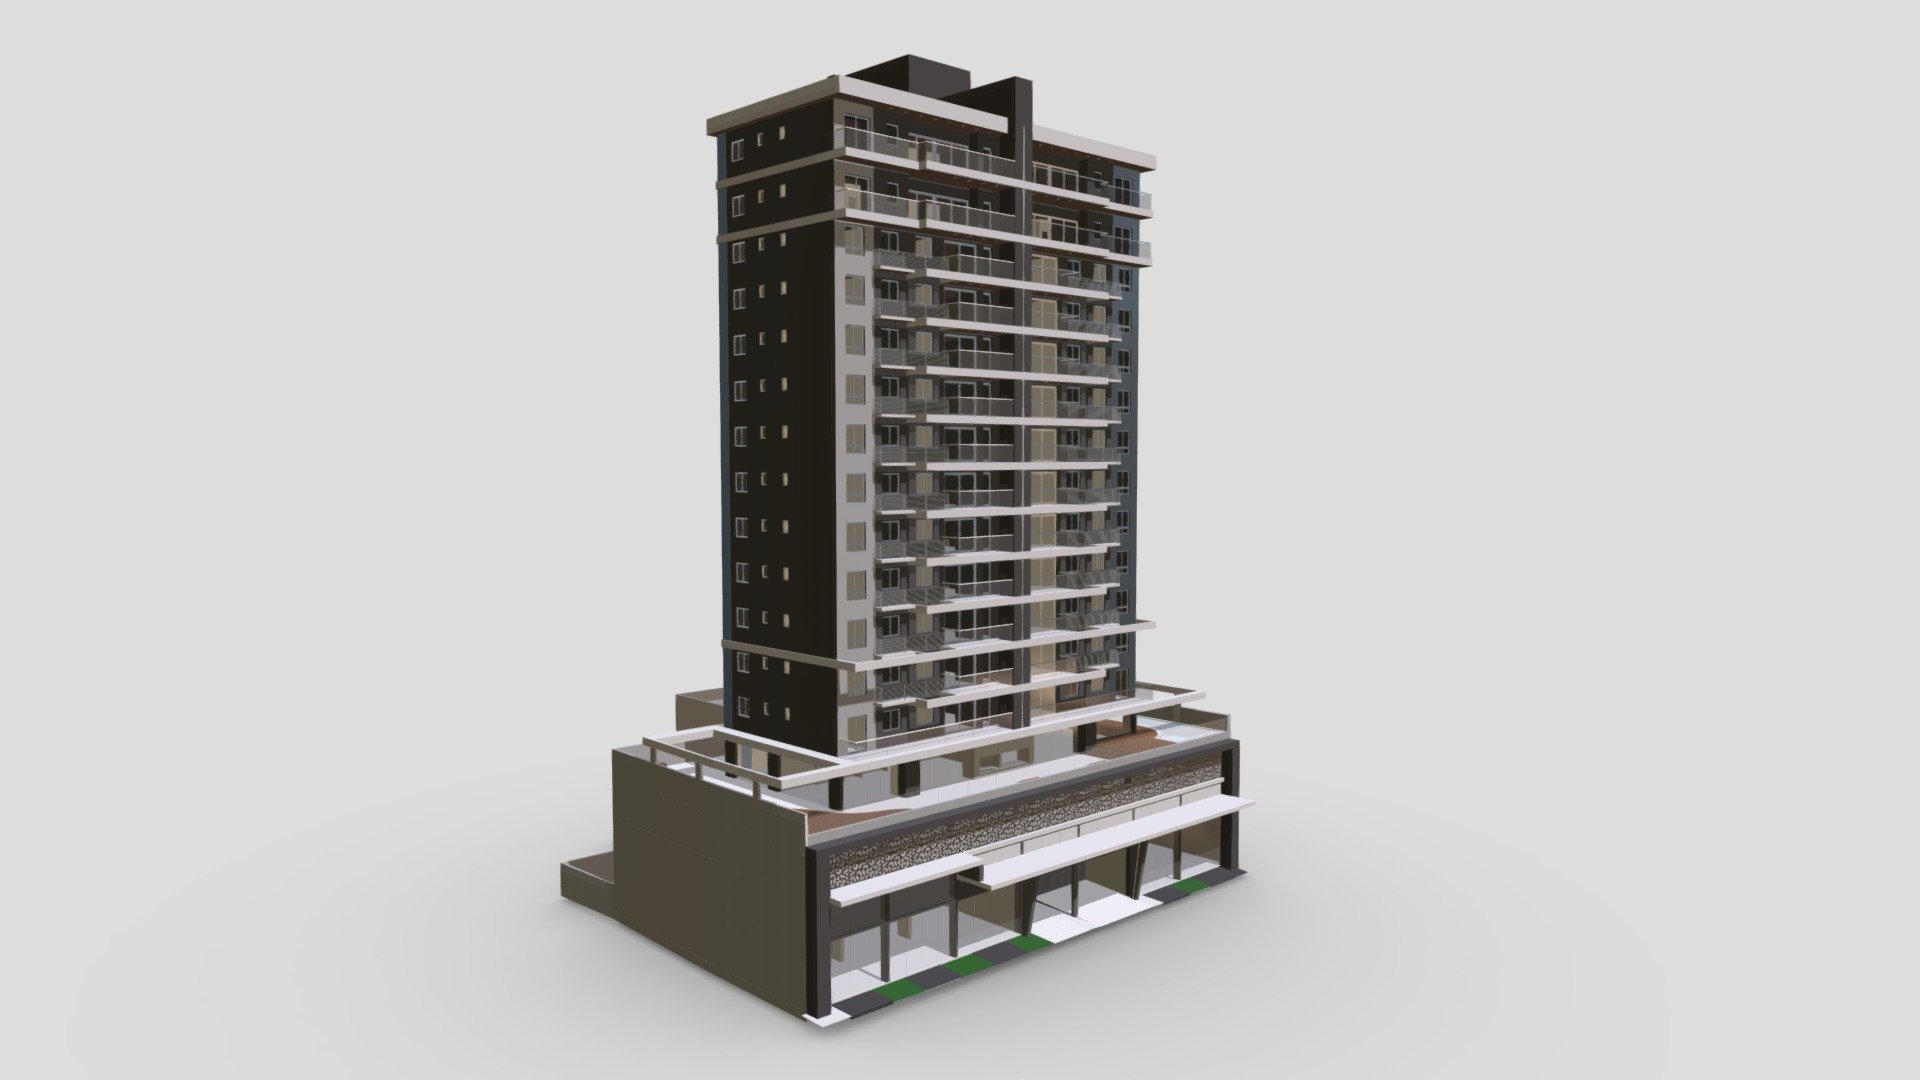 Poligono - Quinta Avenida | Maquete Virtual - Poligono - Quinta Avenida | Maquete Virtual - 3D model by Giro 3D Studio (@giro3dstudio) 3d model